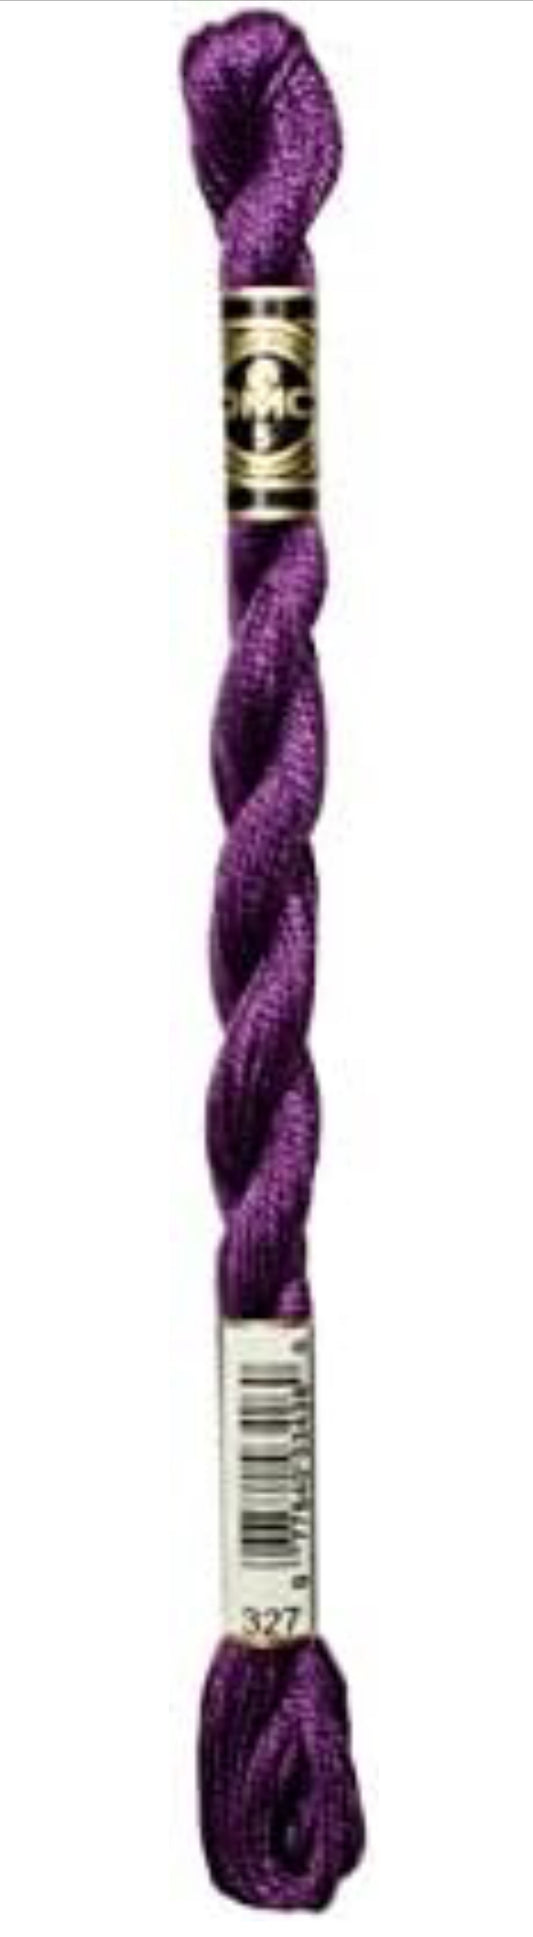 DMC Pearl Cotton Skein Size 5 Dark Violet #327